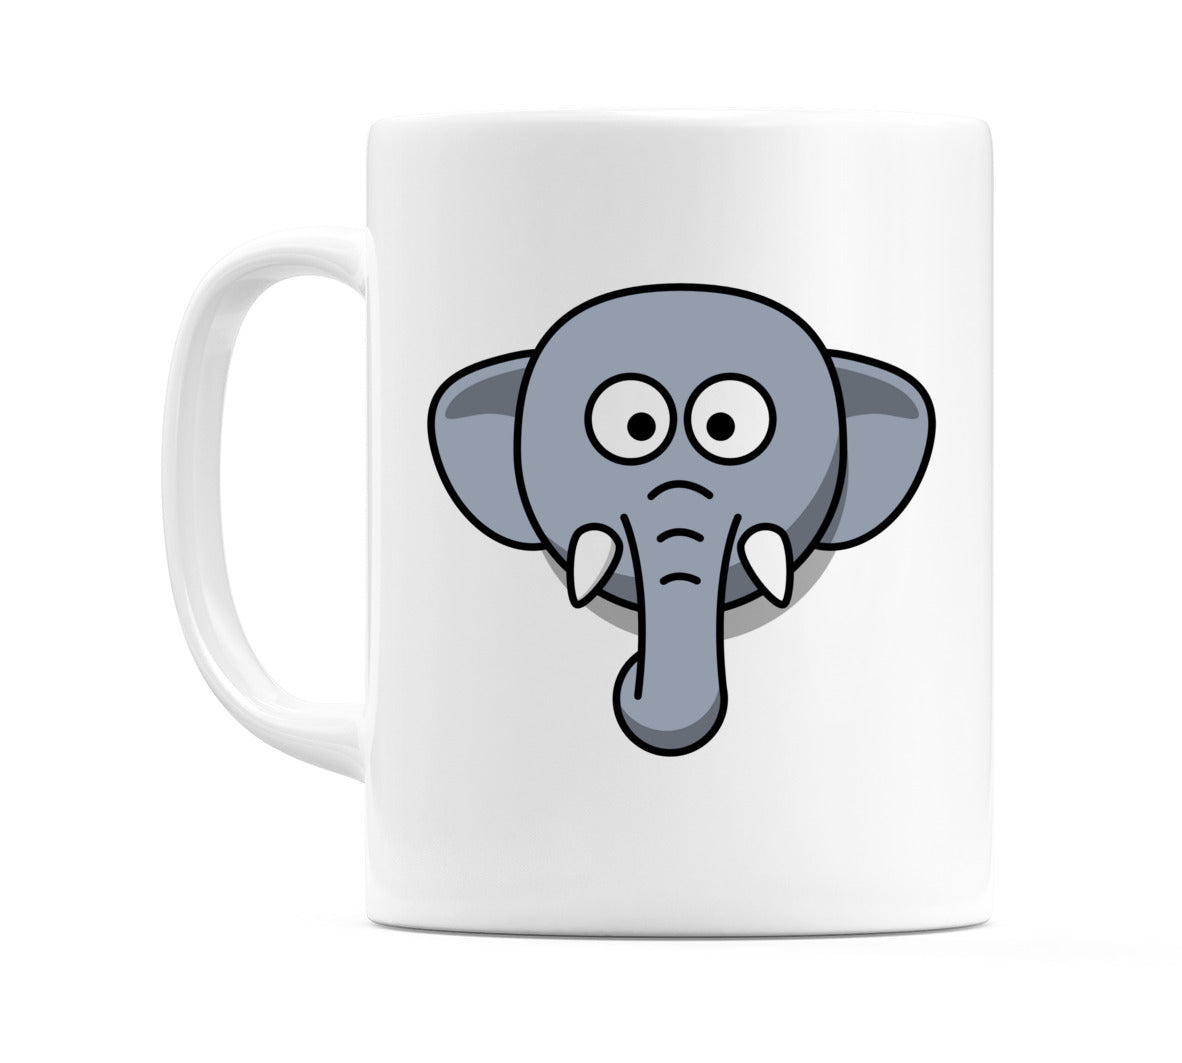 Cute Elephant Mug